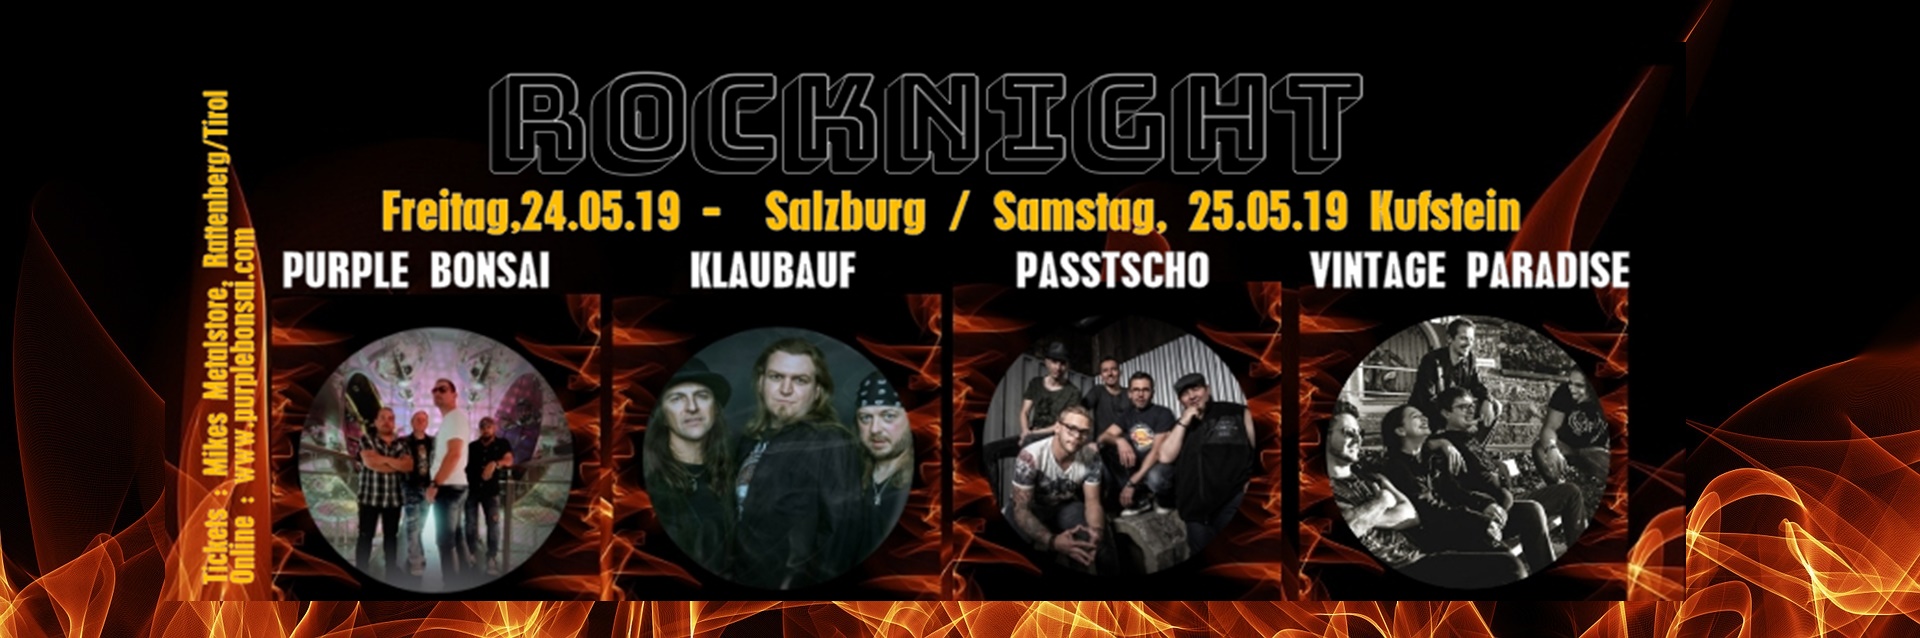 gewinnspiel-rocknight-salzburg-kufstein-je-2-ticketscd